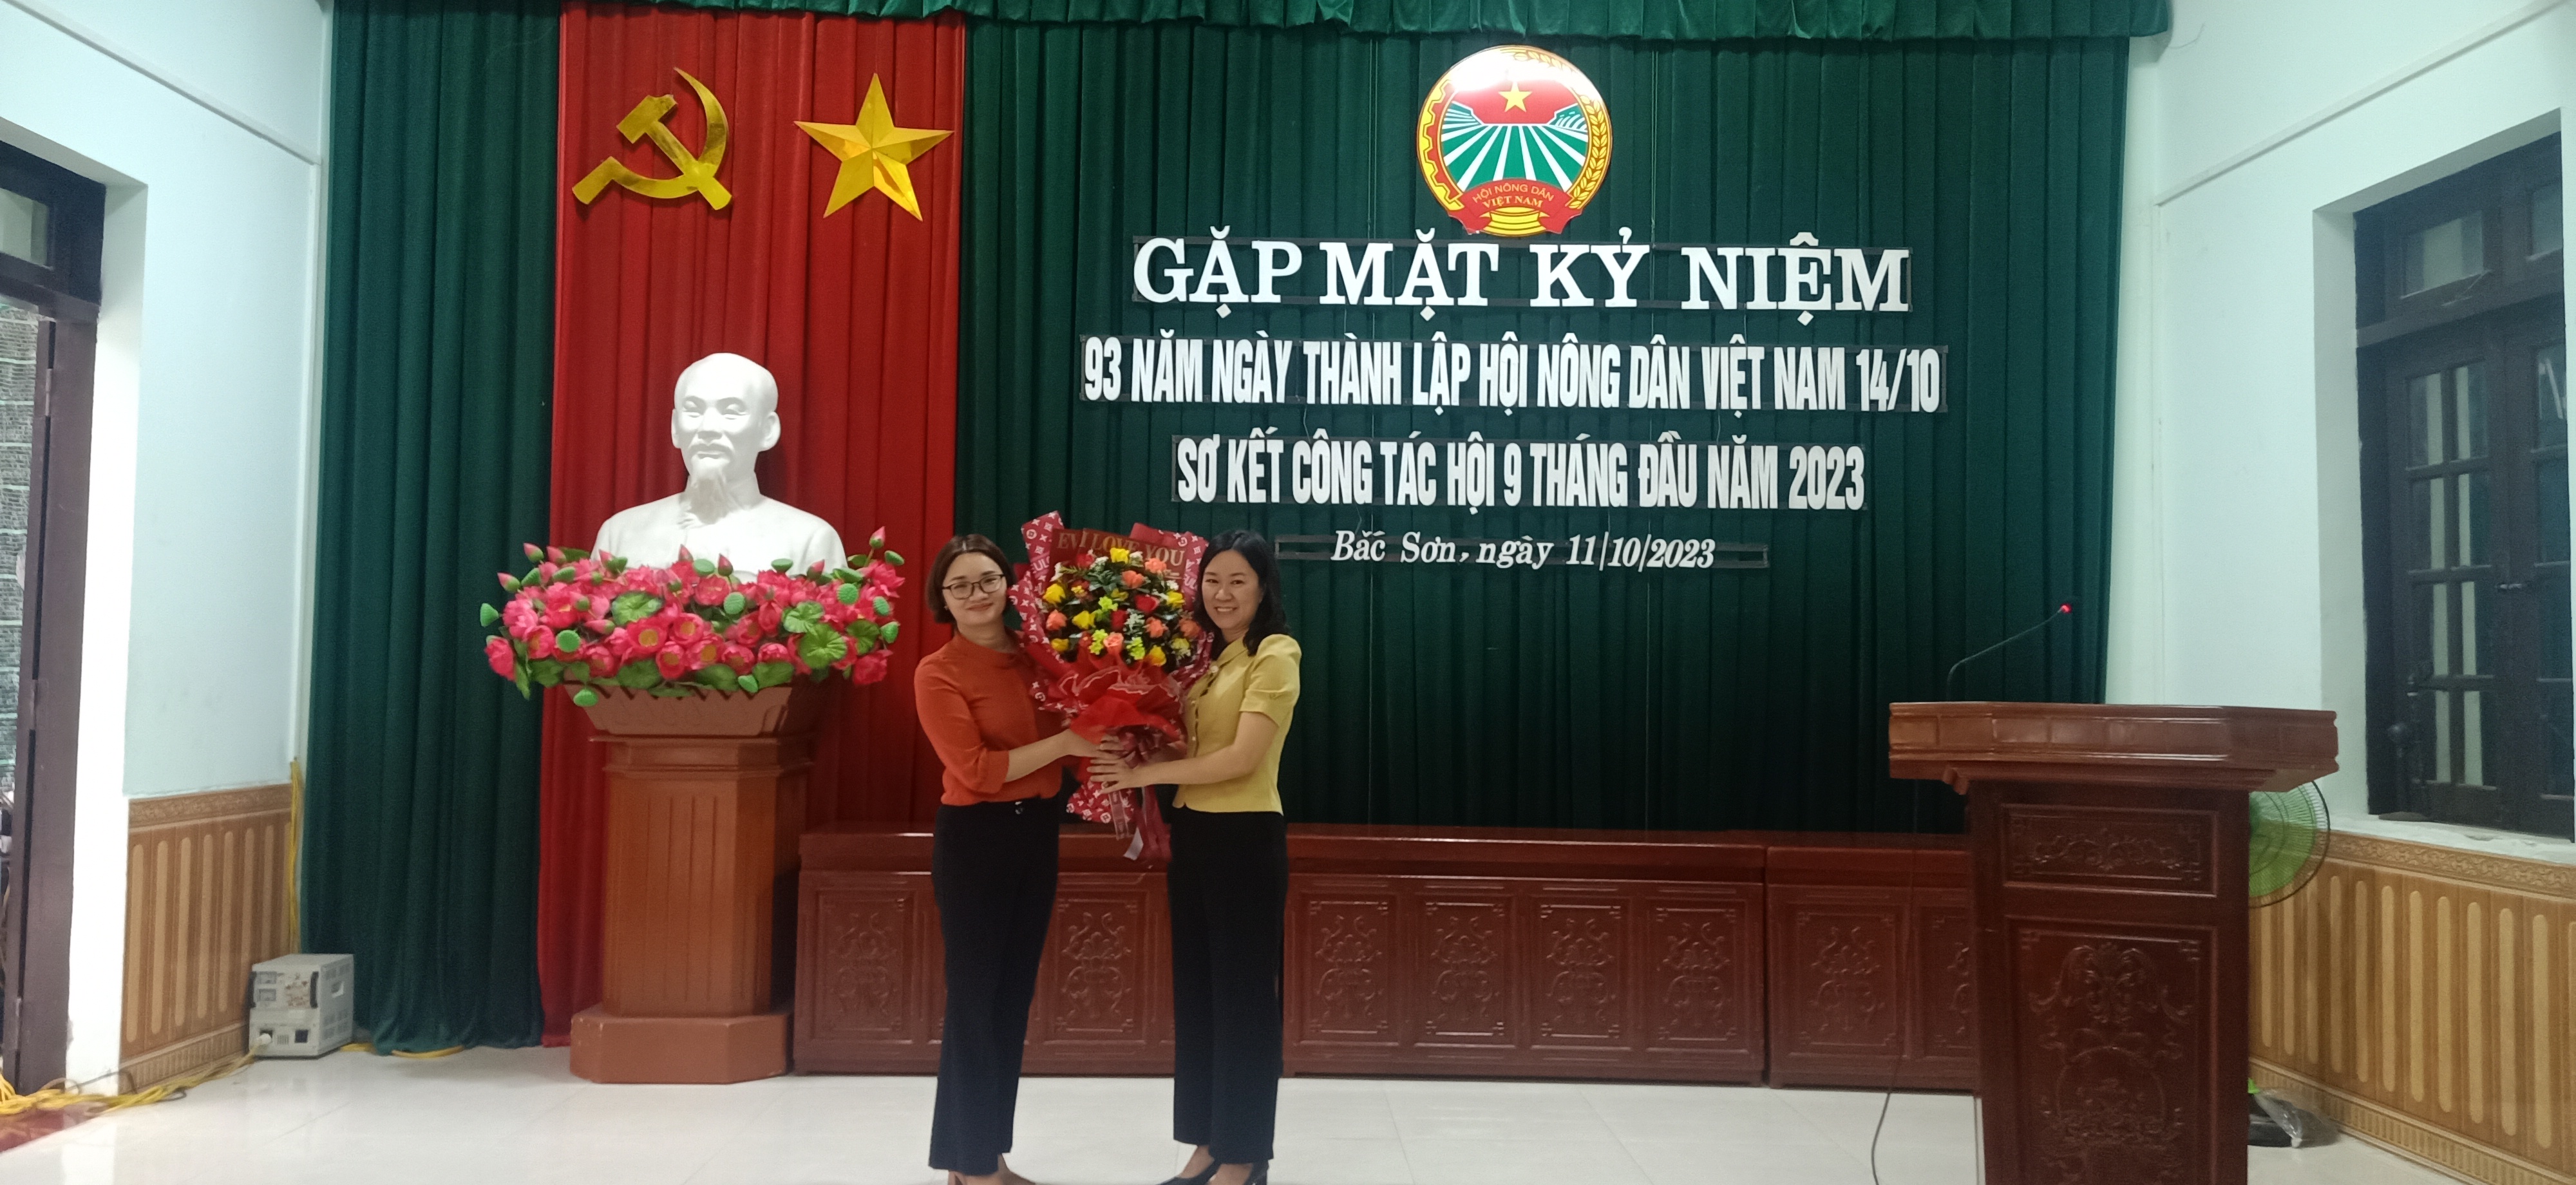 Gặp mặt kỷ niệm 93 năm ngày thành lập Hội Nông Dân Việt Nam (14/10/1930 – 14/10/2023)